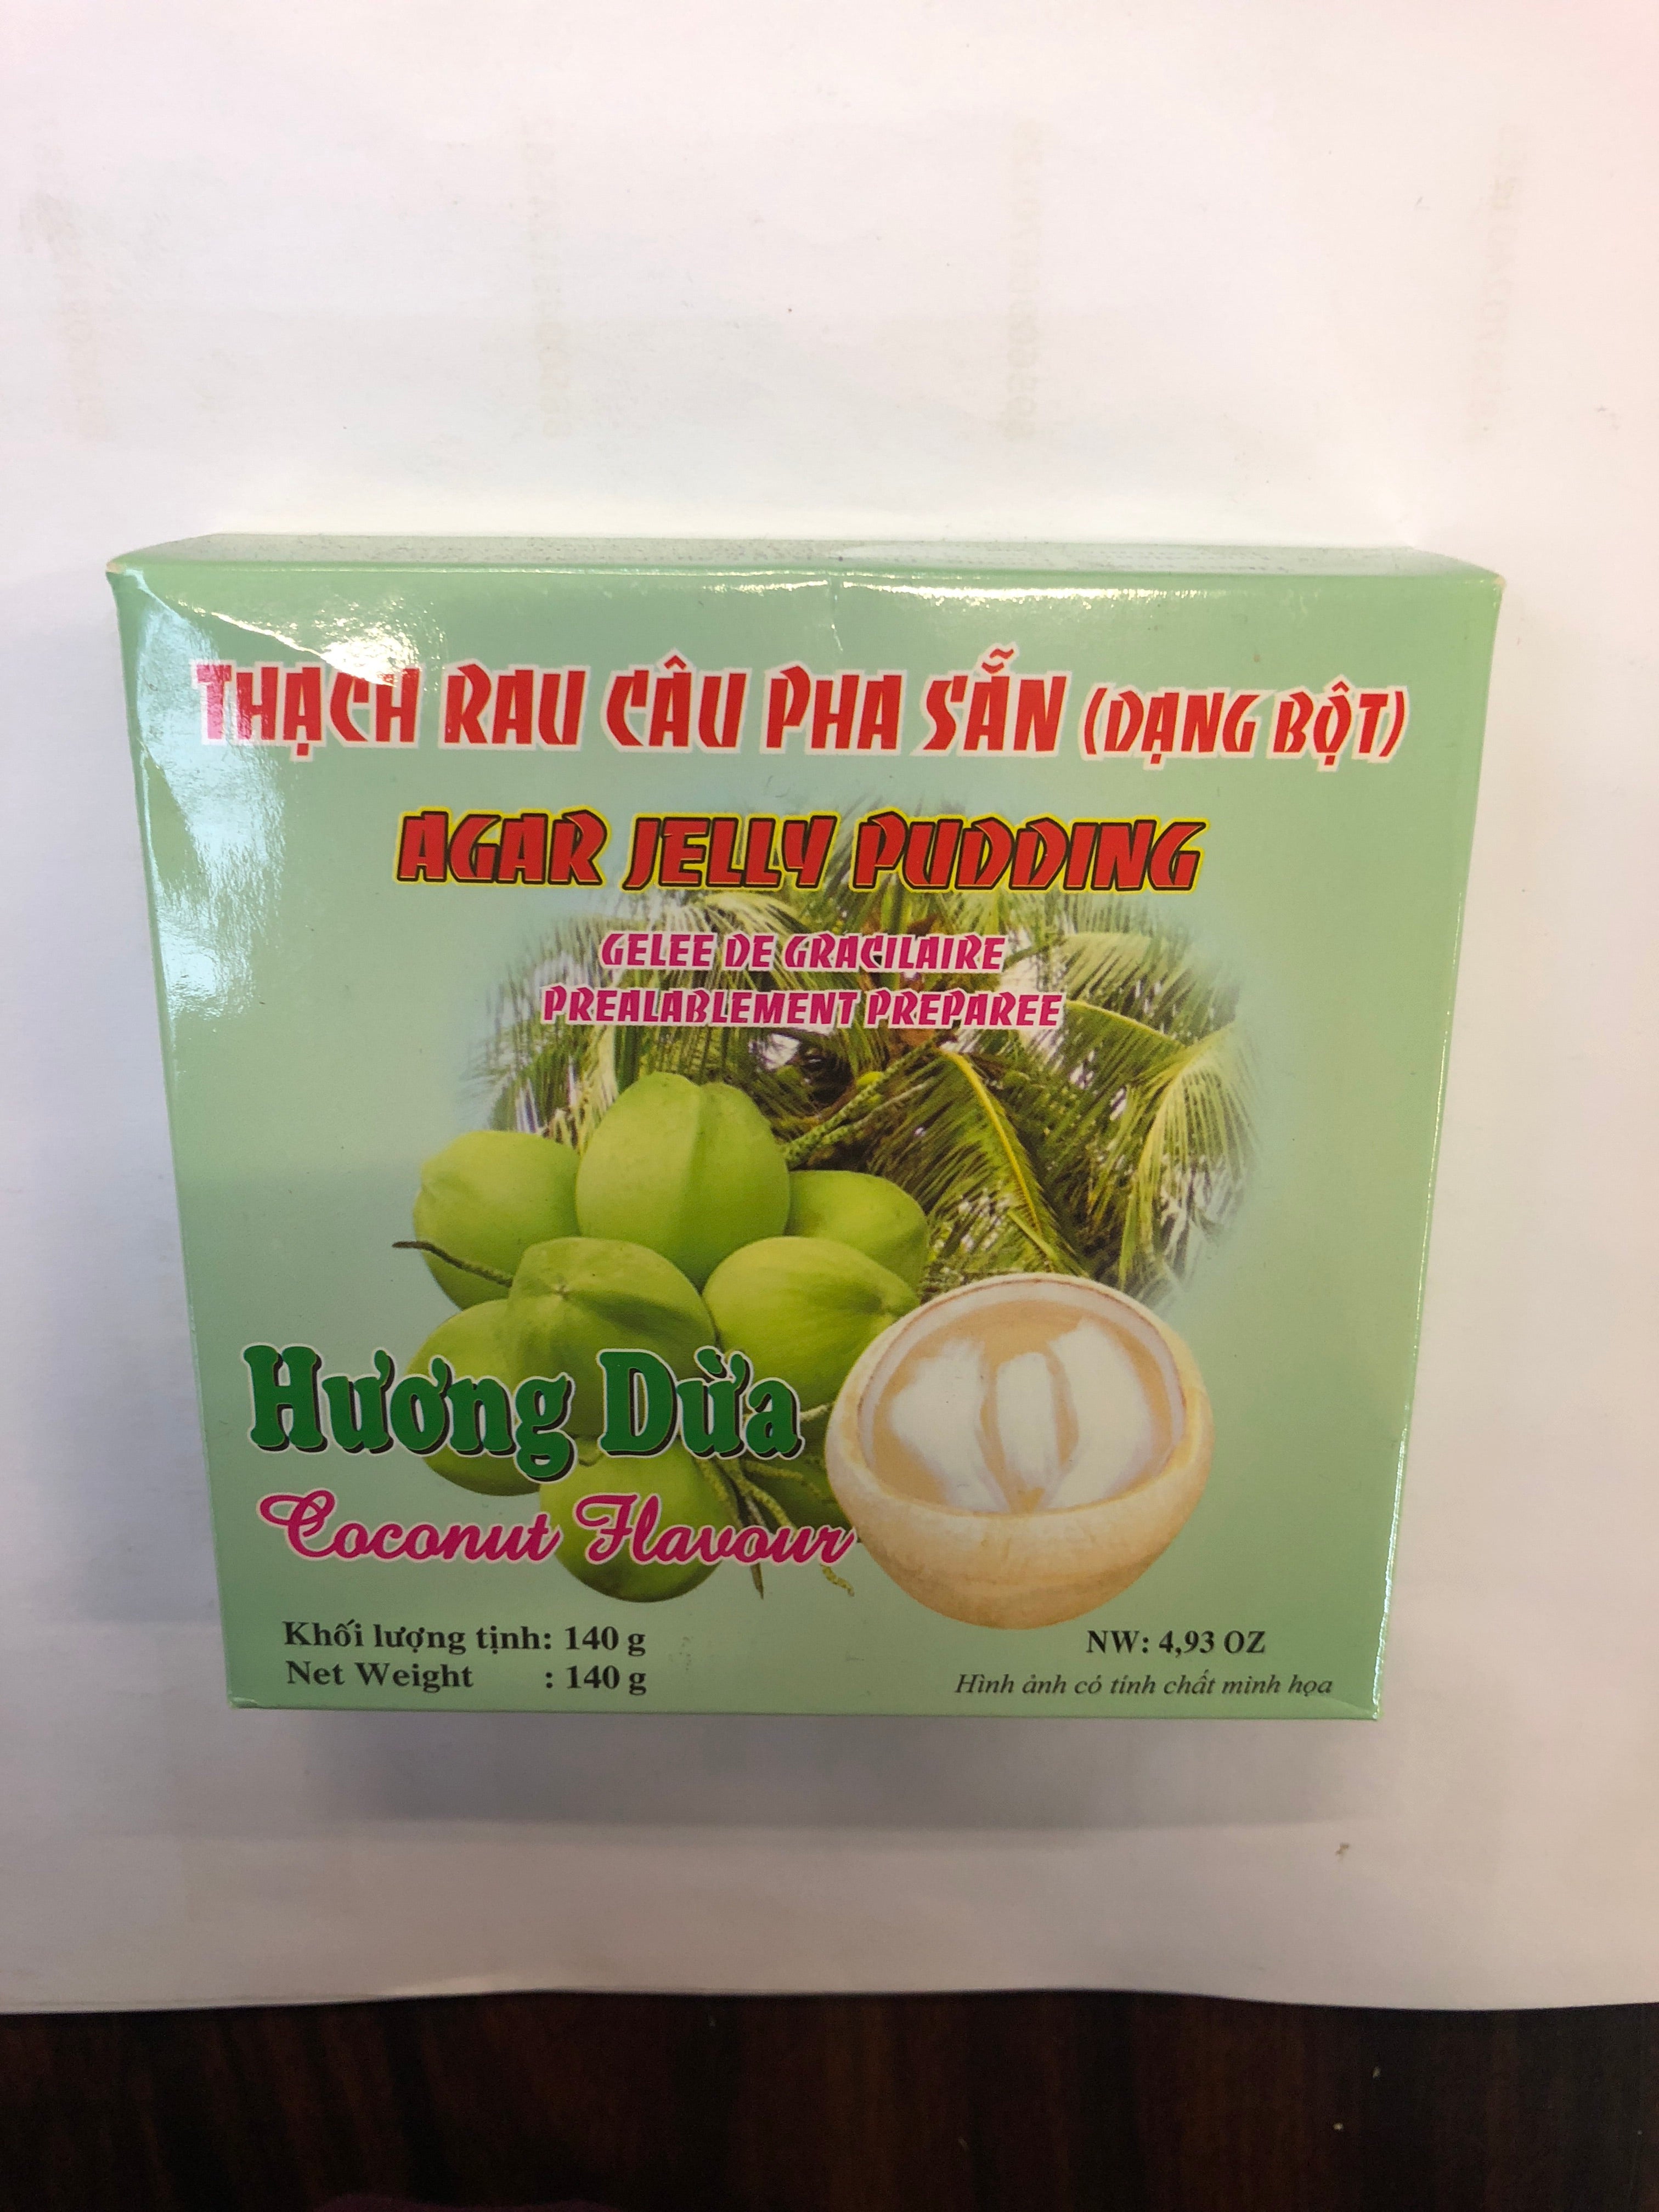 Agar Jelly Puding (Pandan Paste) - Thạch rau câu hương dừa 140g